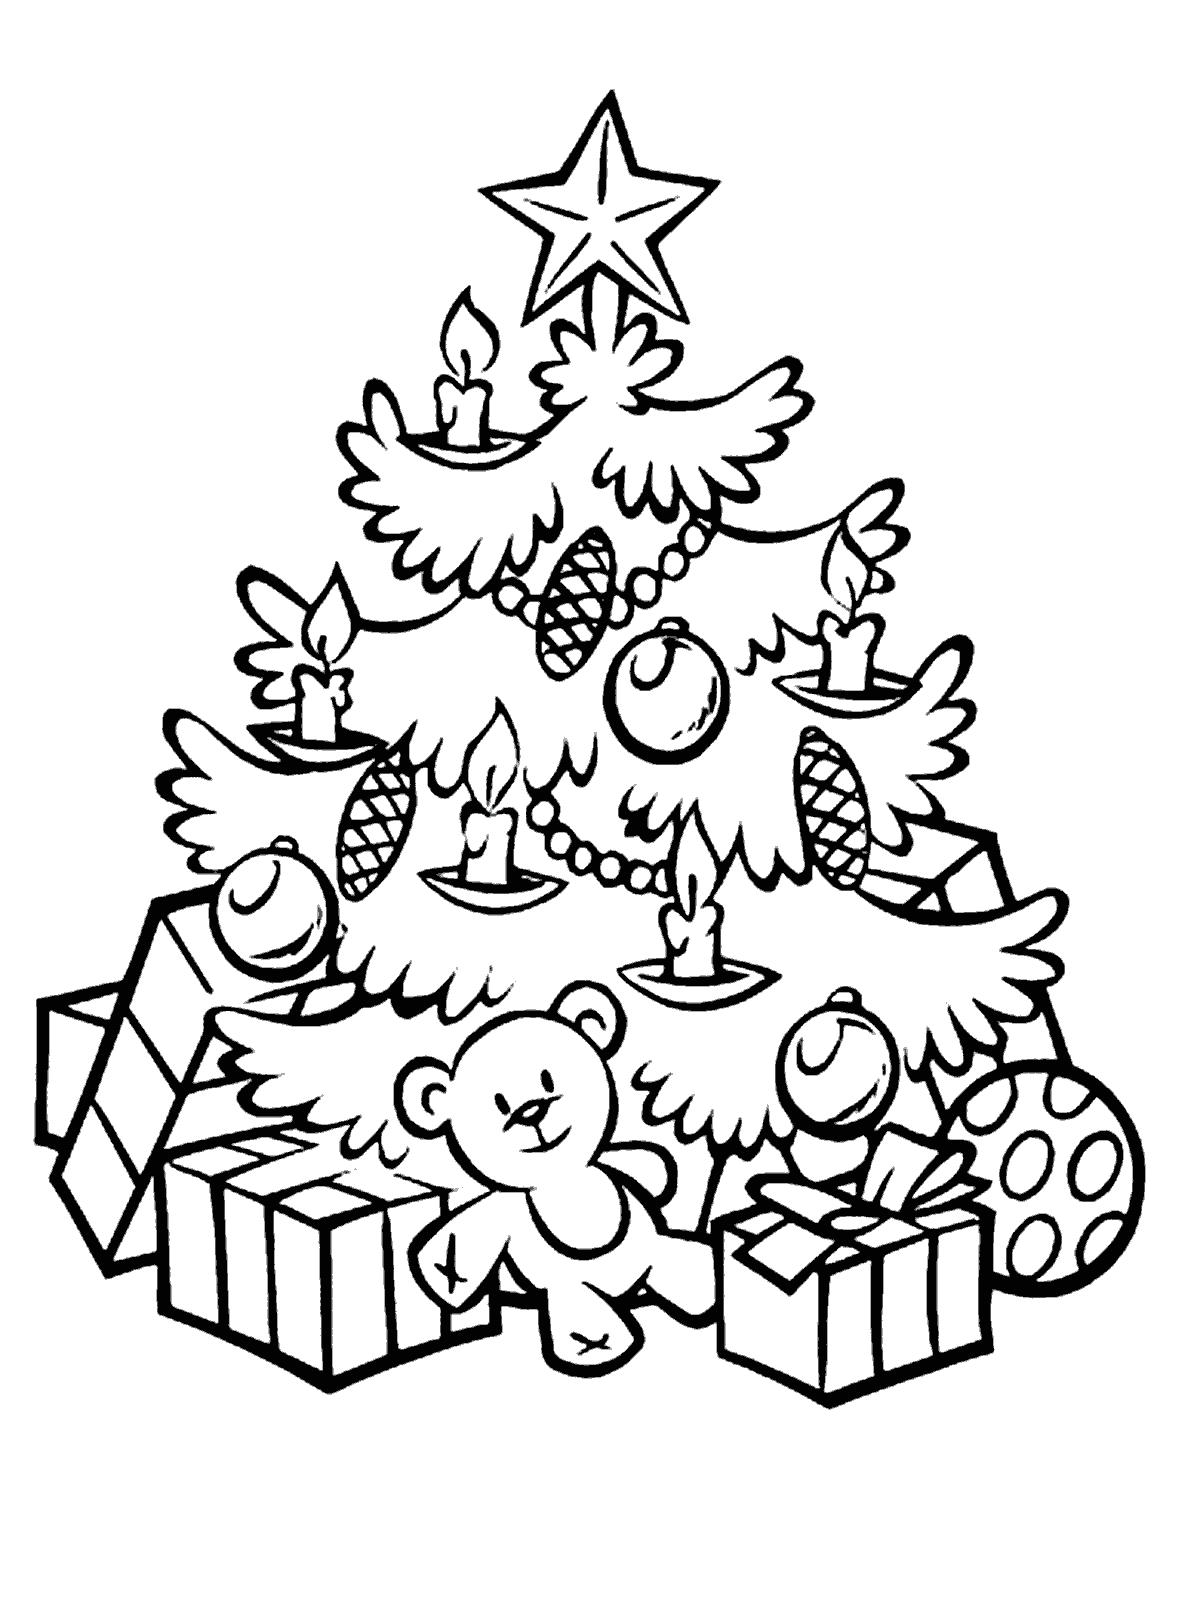 Malvorlagen - Weihnachtsbaum und viele Geschenke